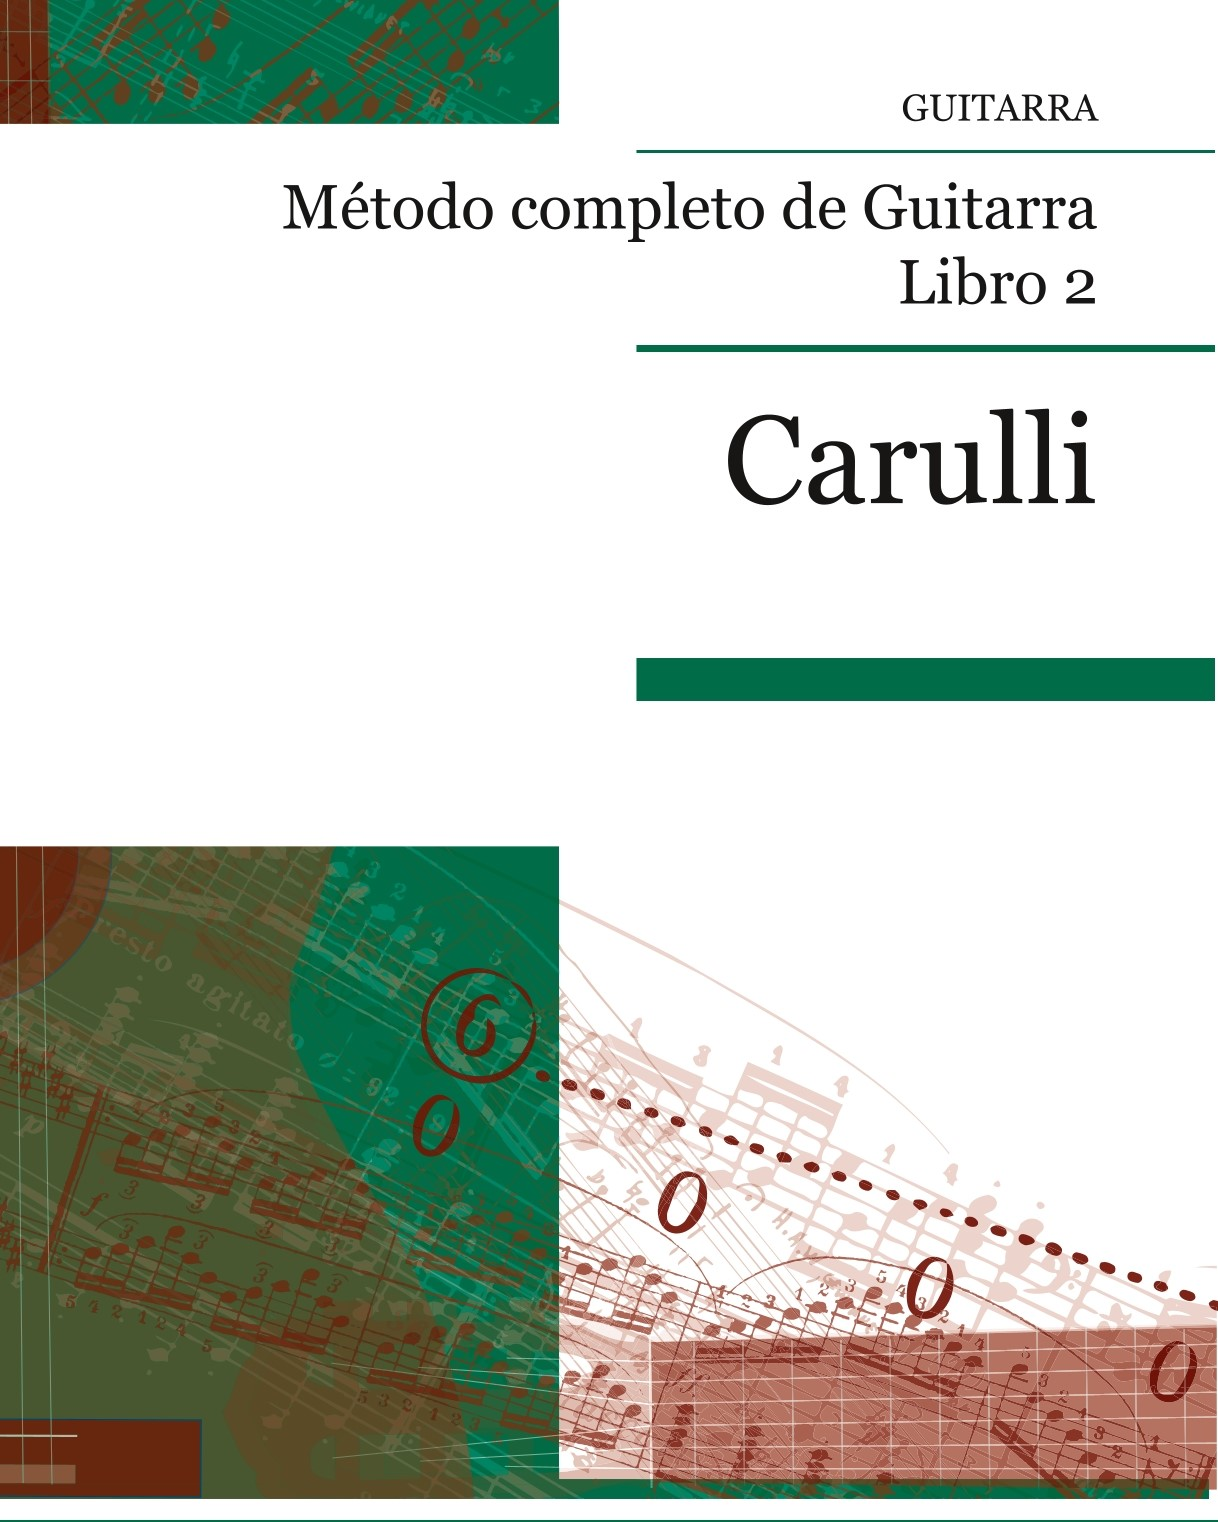 Metodo Completo de Guitarra, Book 2